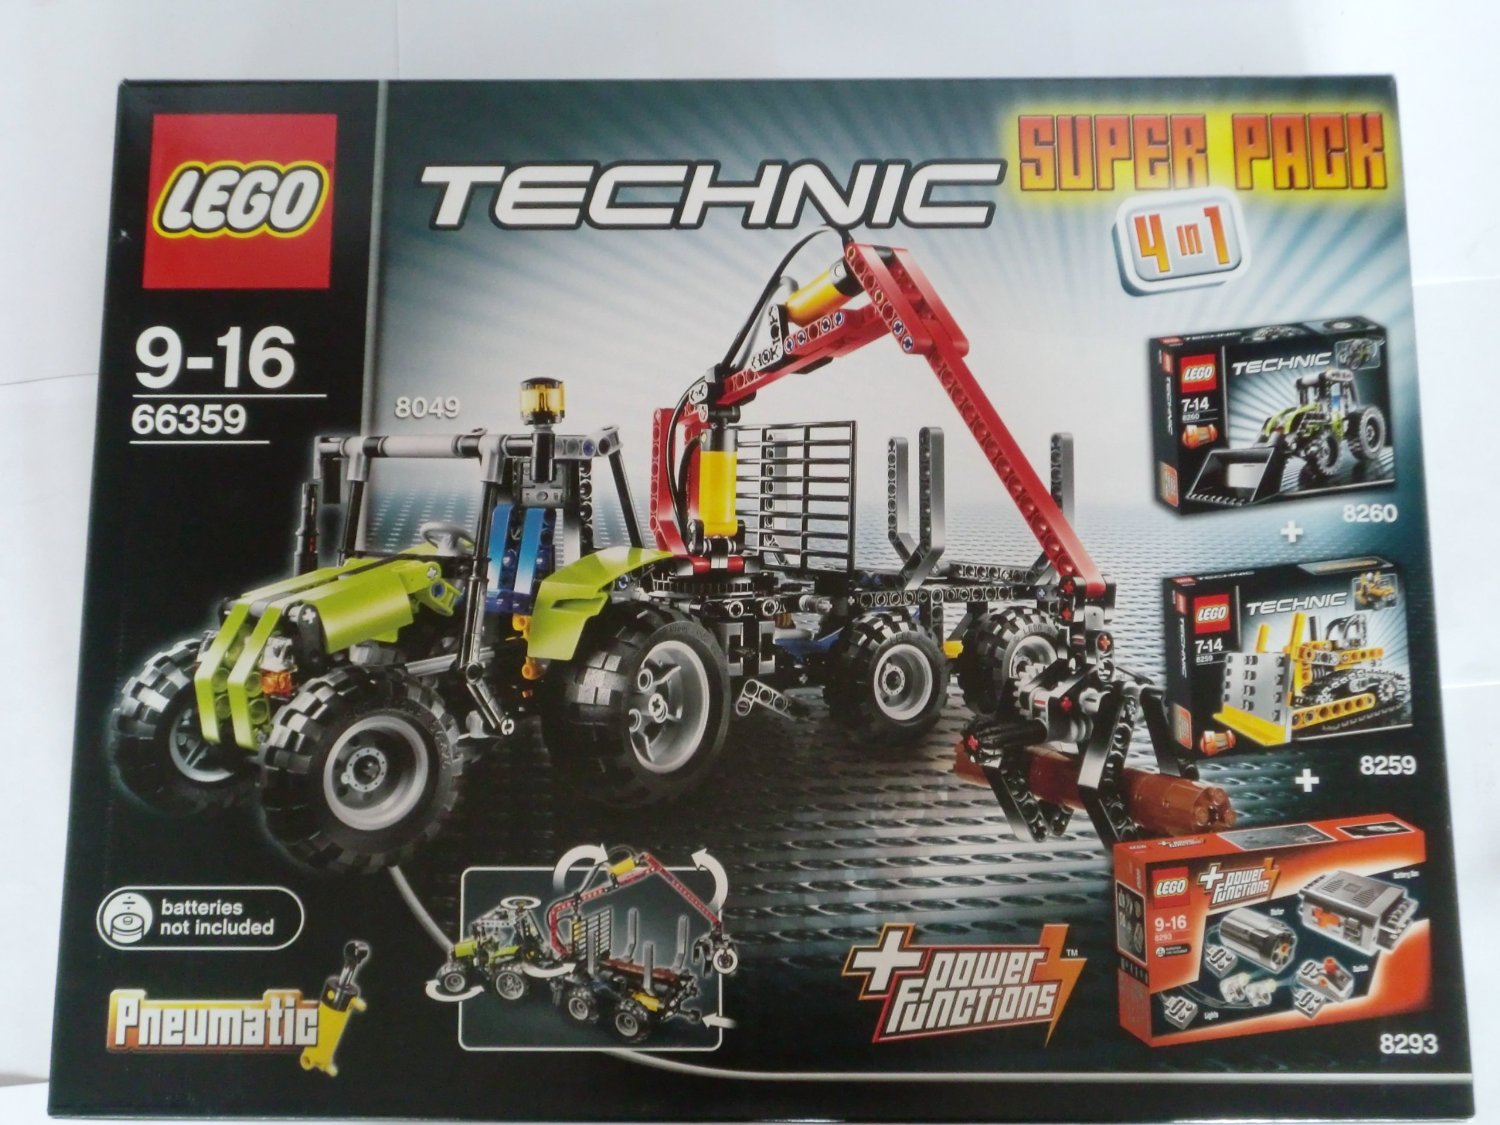 66359 - Technic Super Pack 4 in 1 (8049, 8259, 8260)